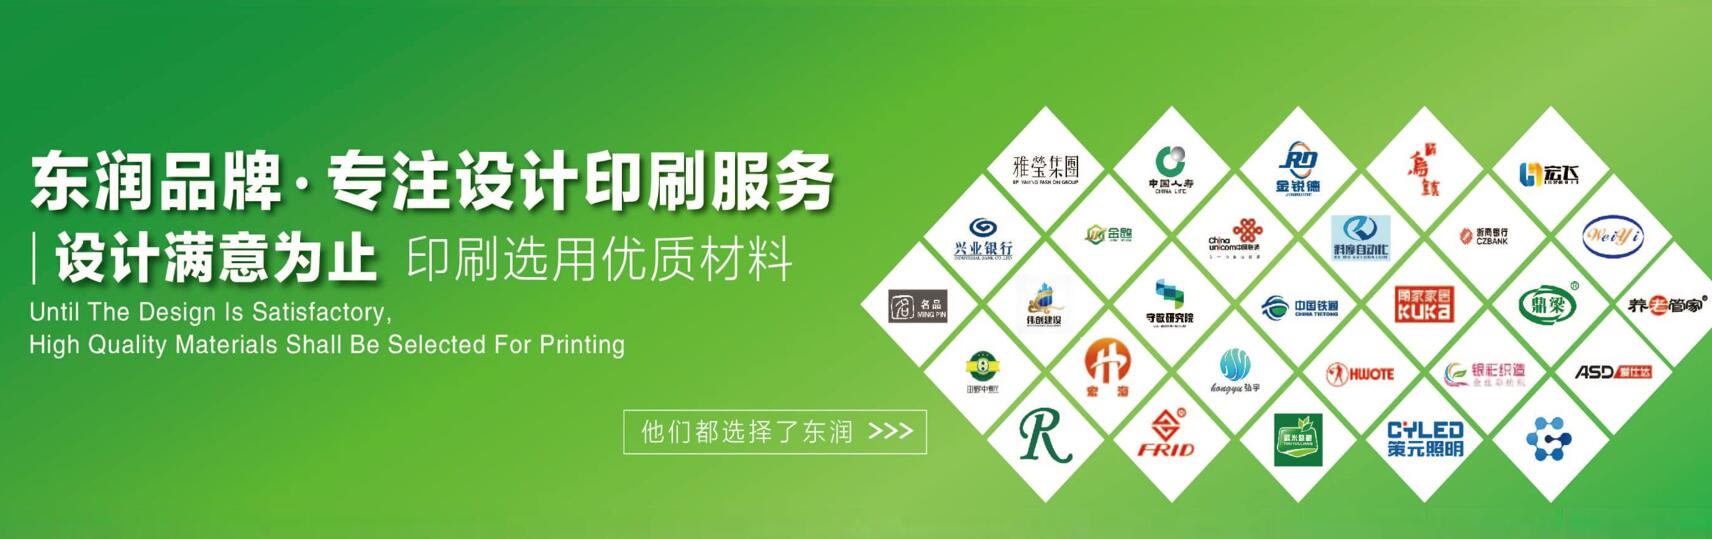 pc taizhou banner